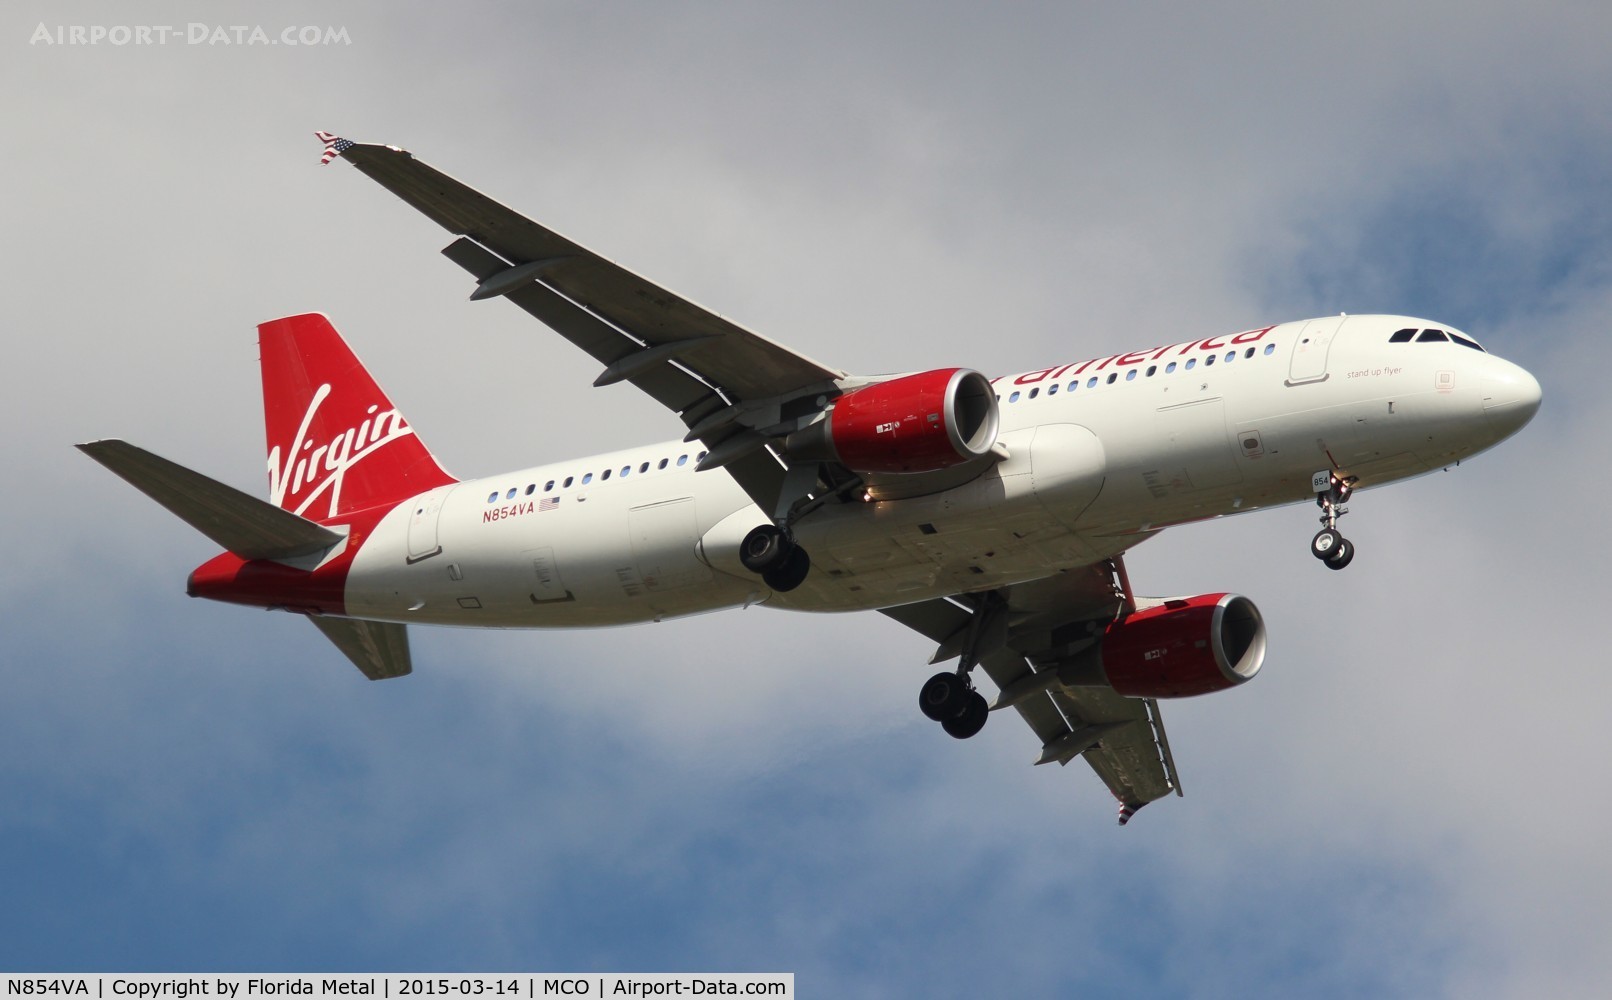 N854VA, 2012 Airbus A320-214 C/N 5058, Virgin America